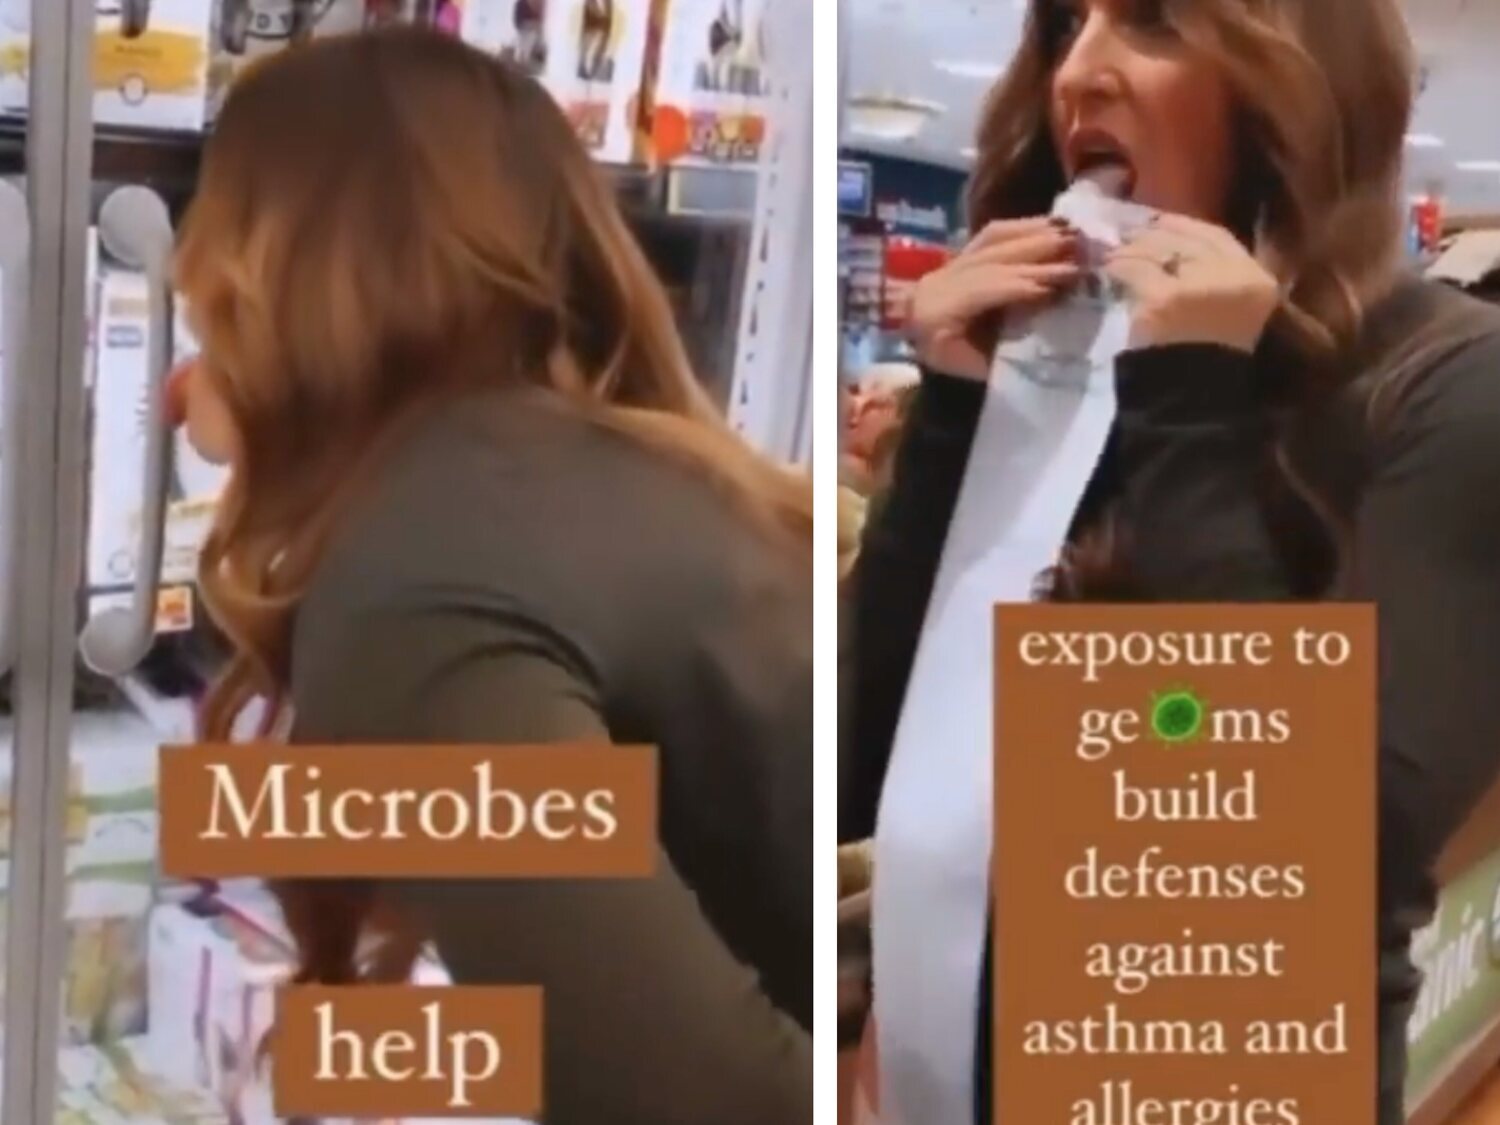 Una influencer antivacunas se graba lamiendo todos los objetos de un supermercado: "Los gérmenes crean defensas"